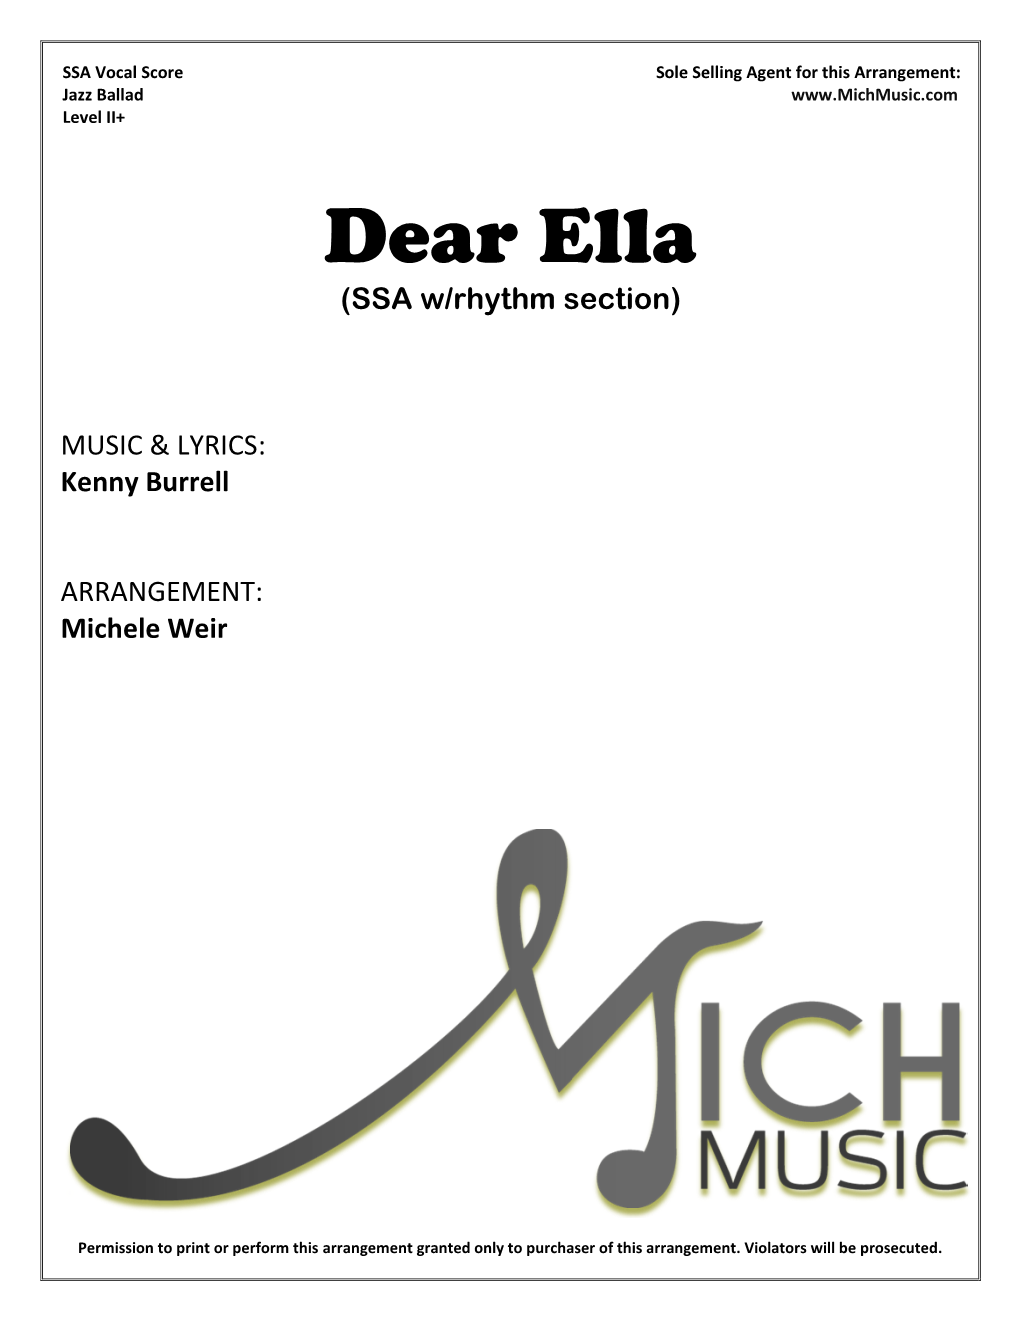 Dear Ella (SSA W/Rhythm Section)